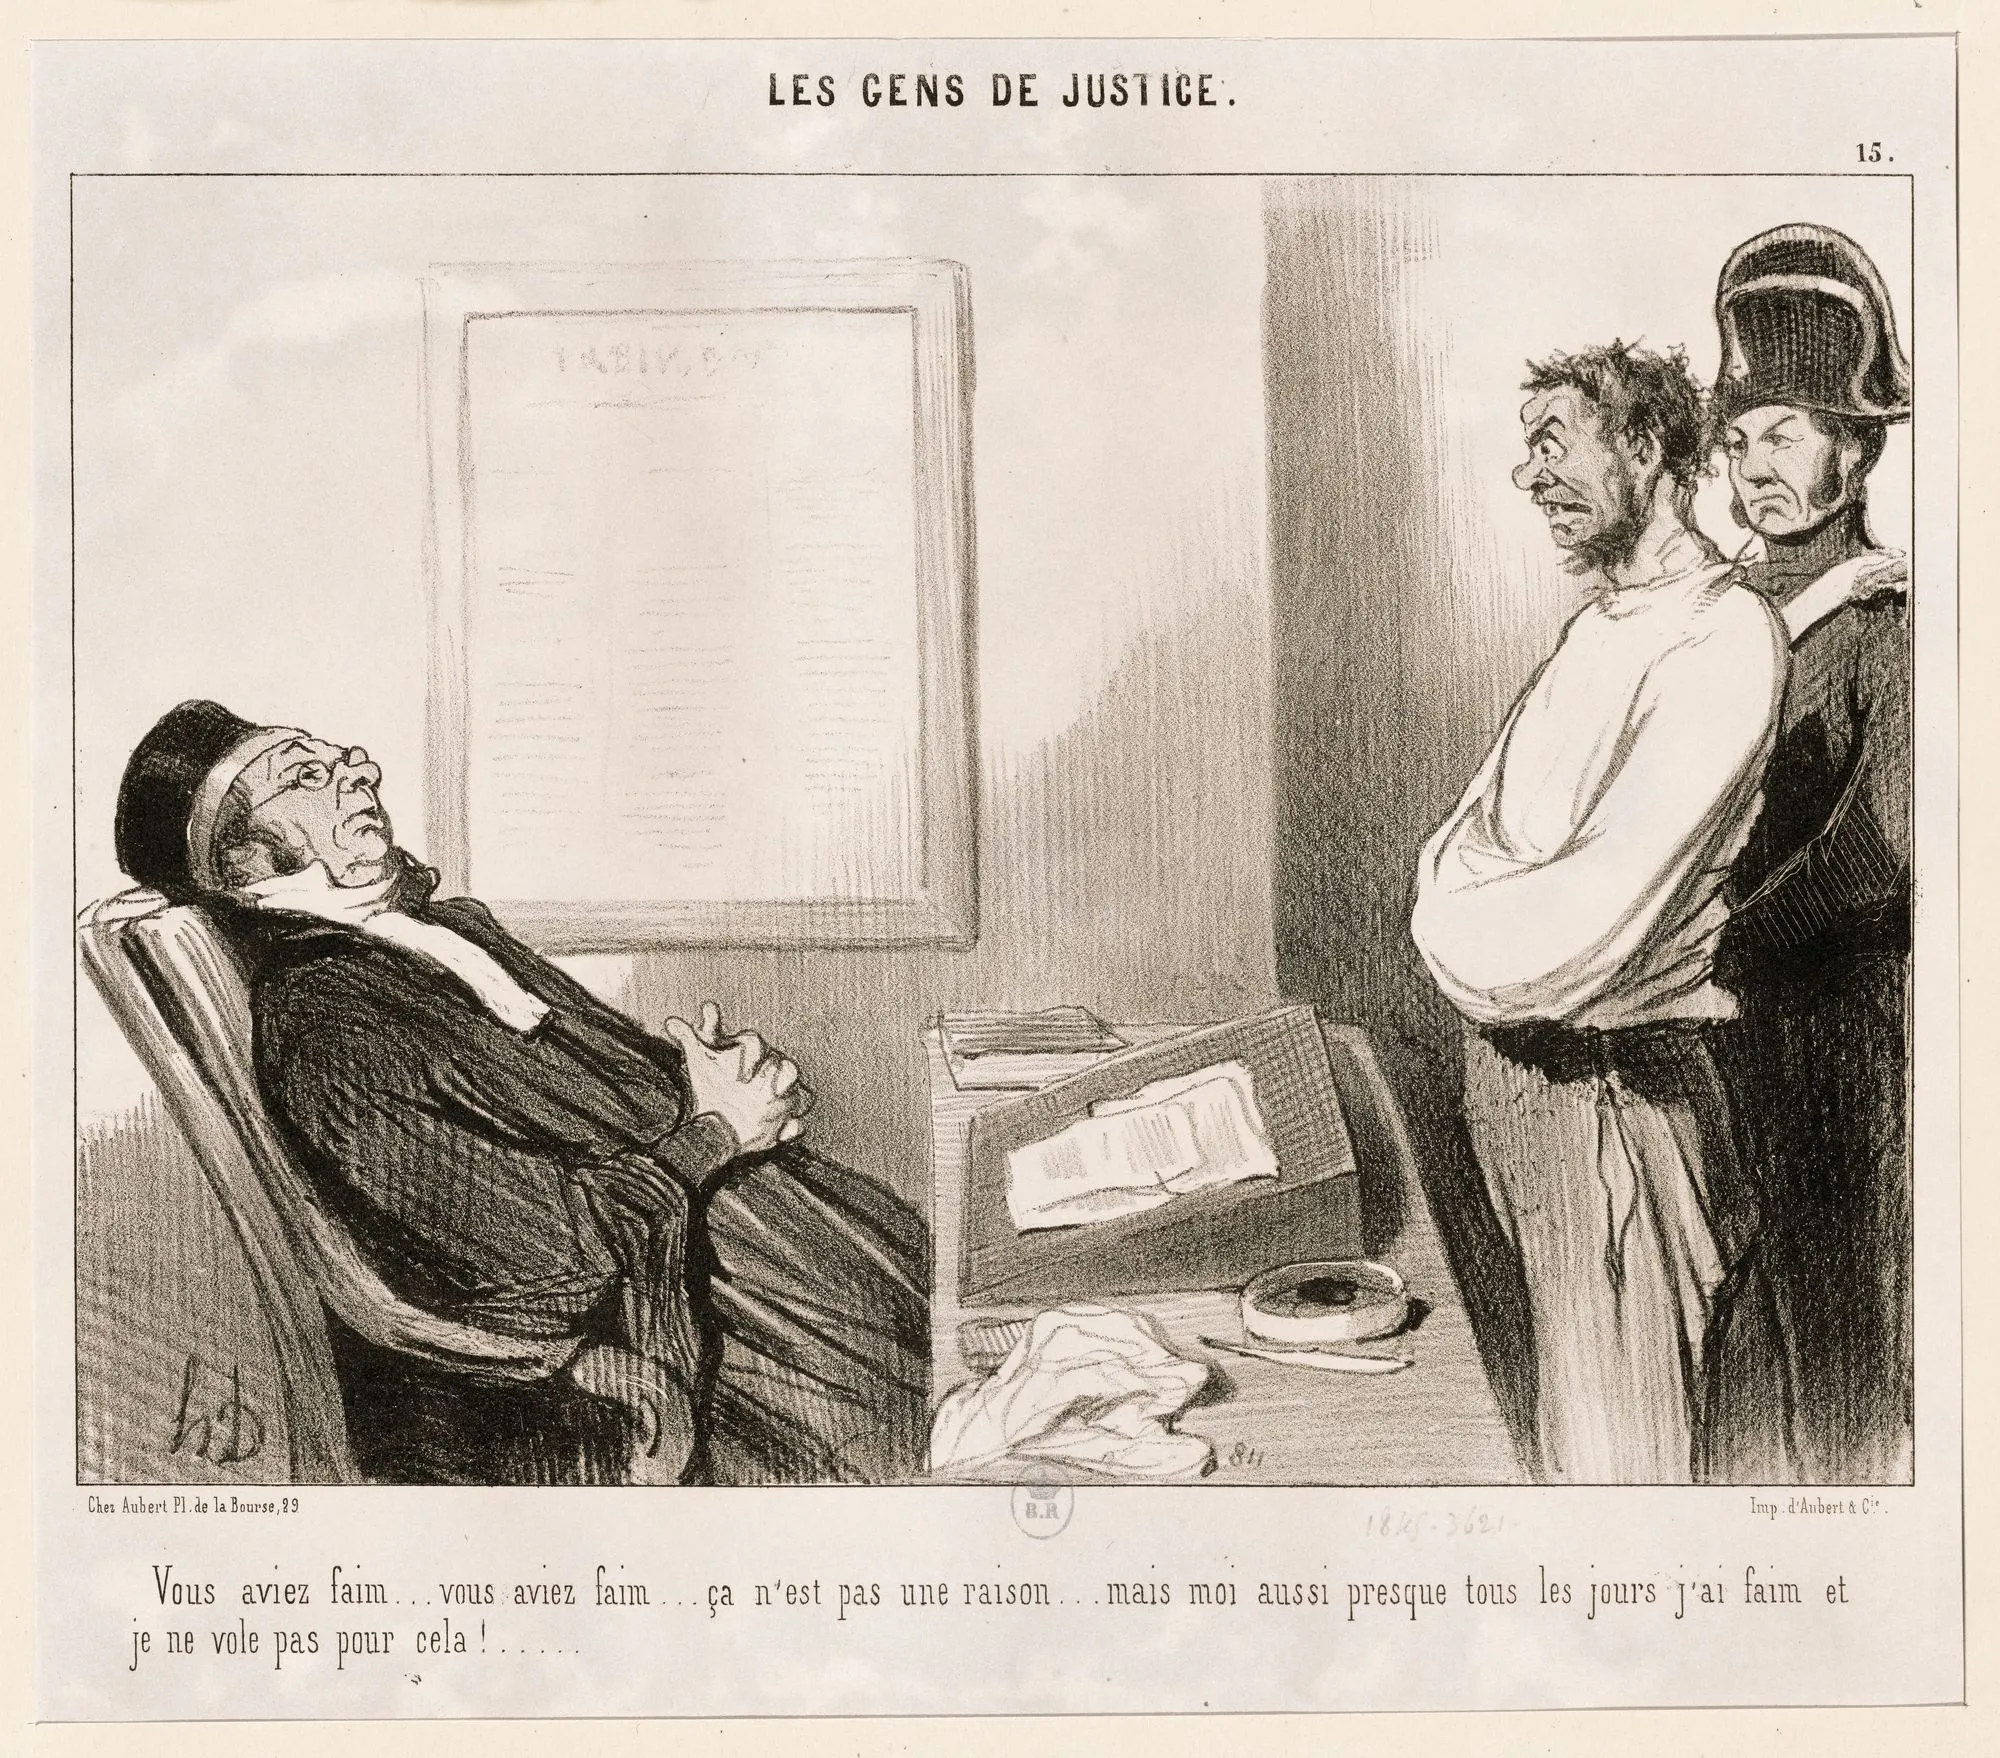 « Vous aviez faim… vous aviez faim… ça n'est pas une raison… mais moi aussi presque tous les jours j'ai faim et je ne vole
pas pour cela ! » Honoré Daumier, Le Charivari, 20 octobre 1845, lithographie, 26 × 18 cm, BnF, Paris.